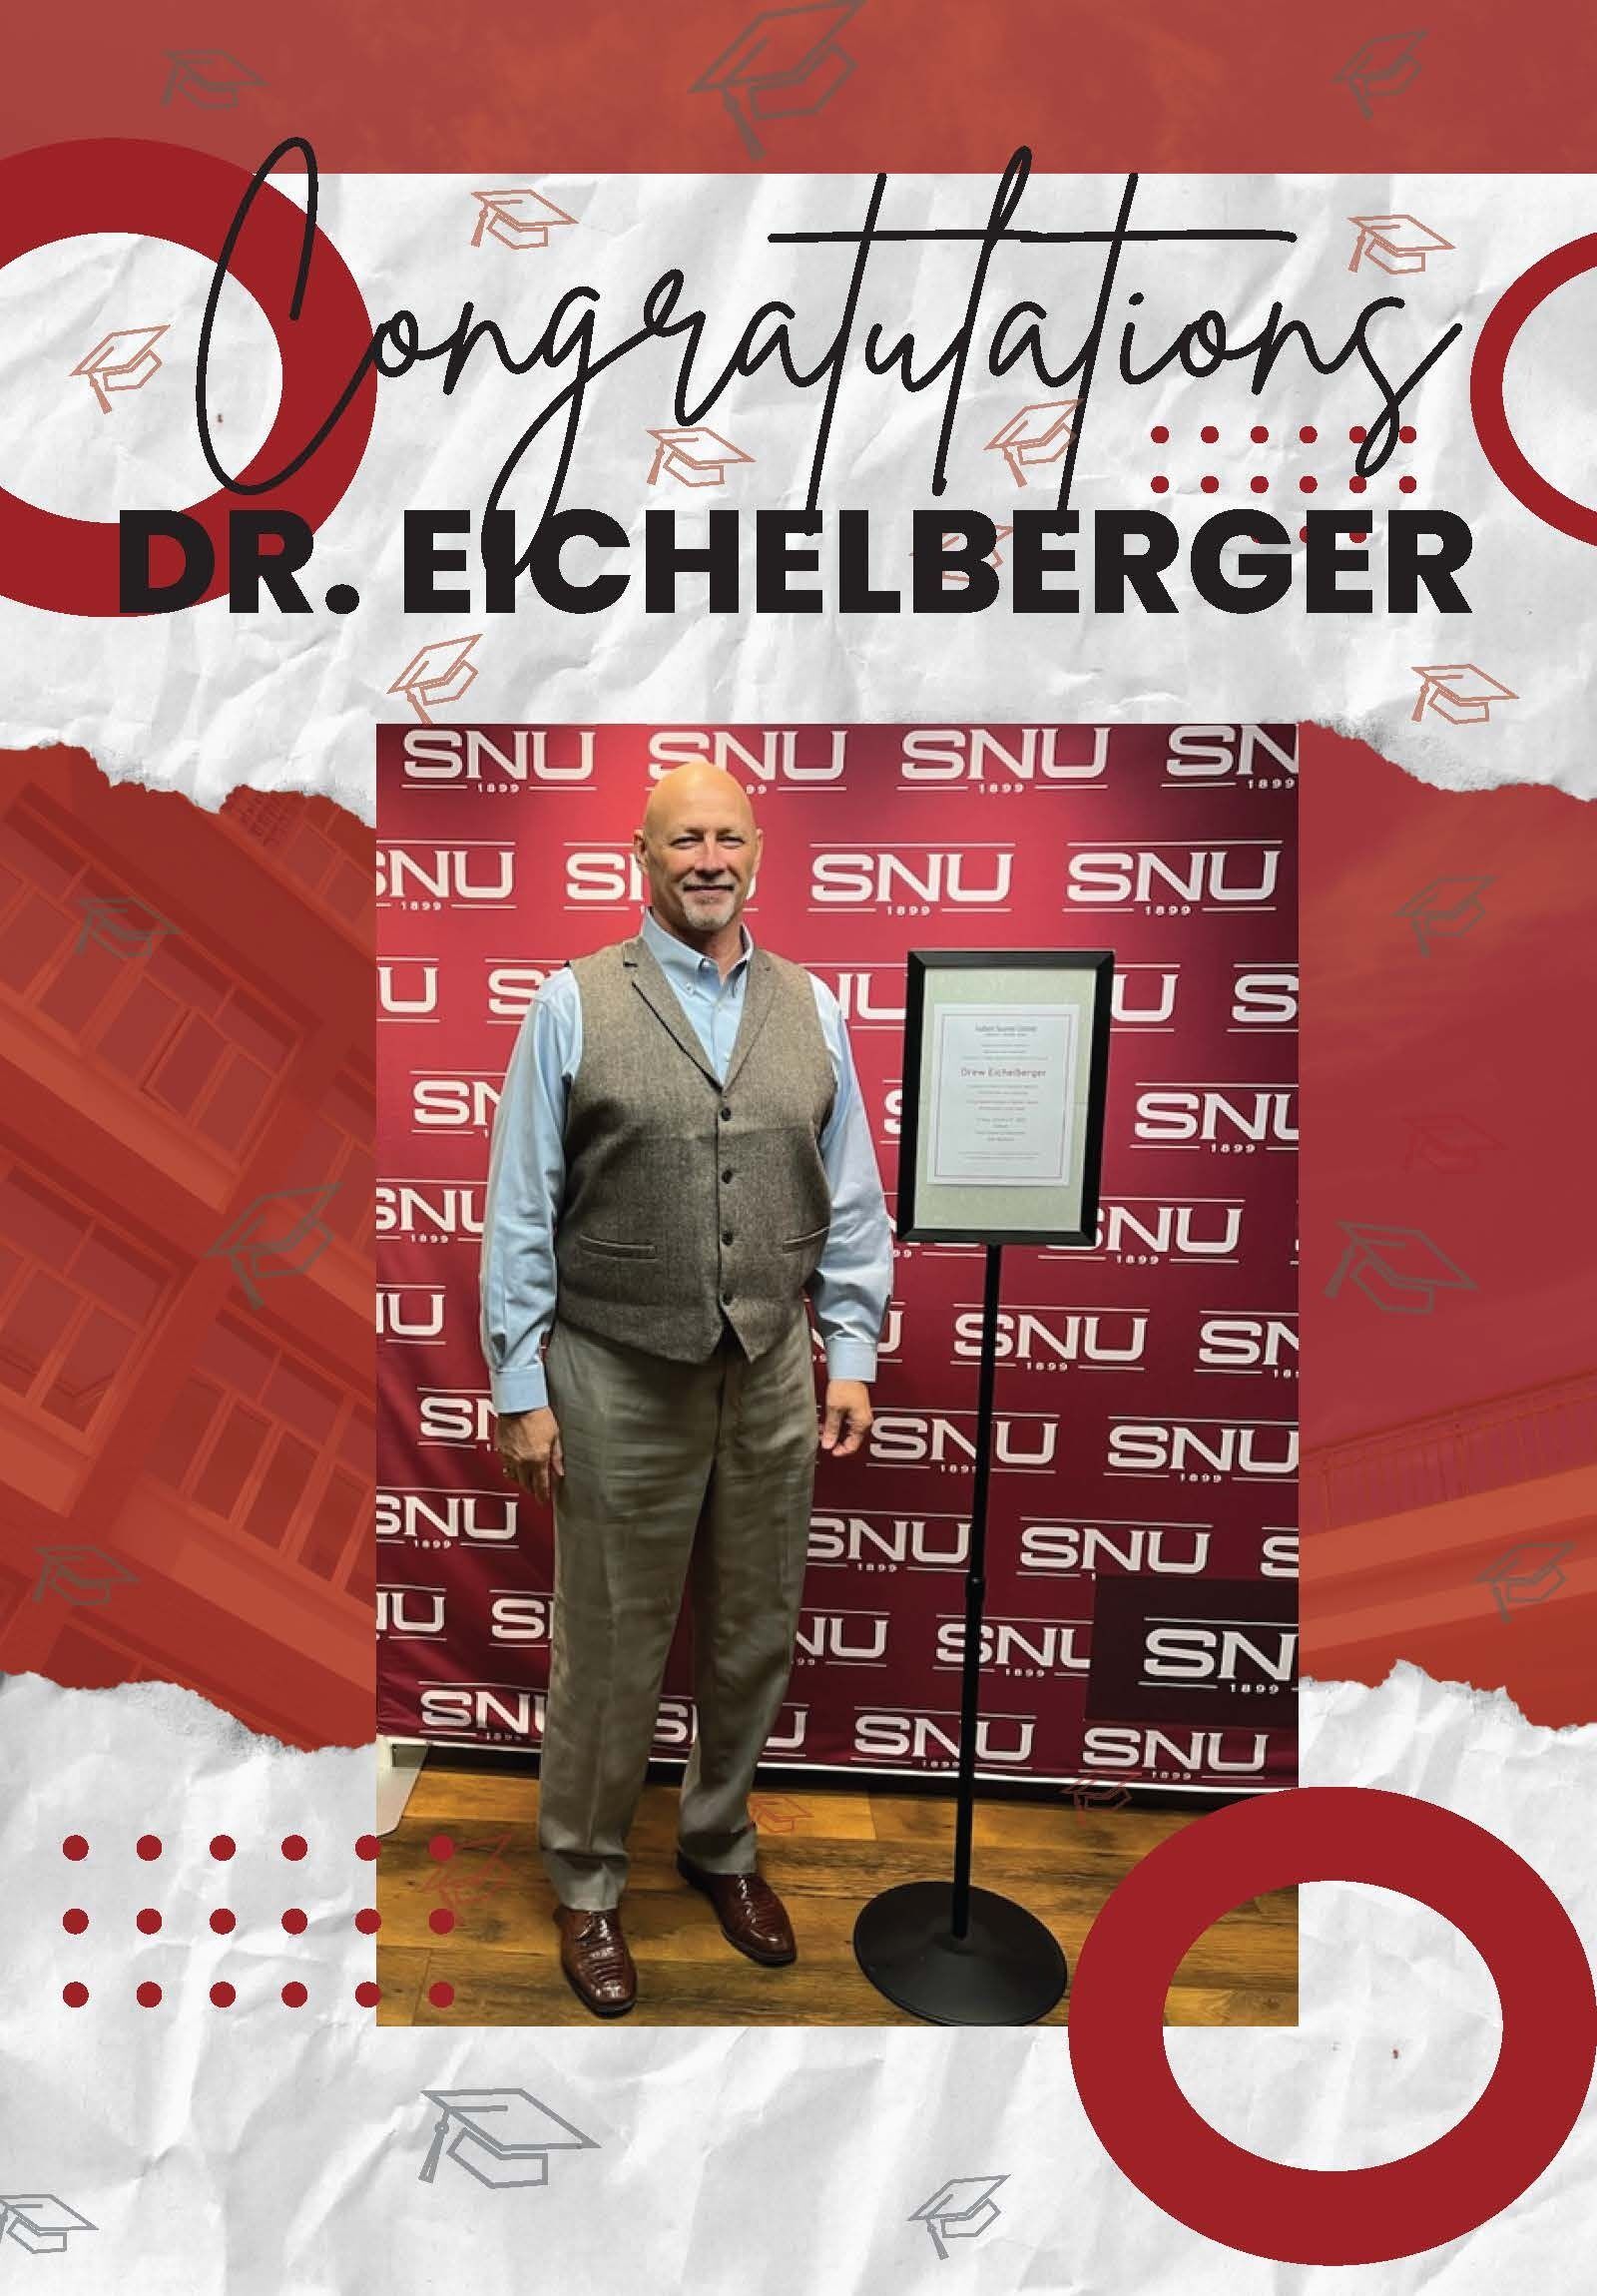 Congratulations, Dr. Eichelberger Ed.D!